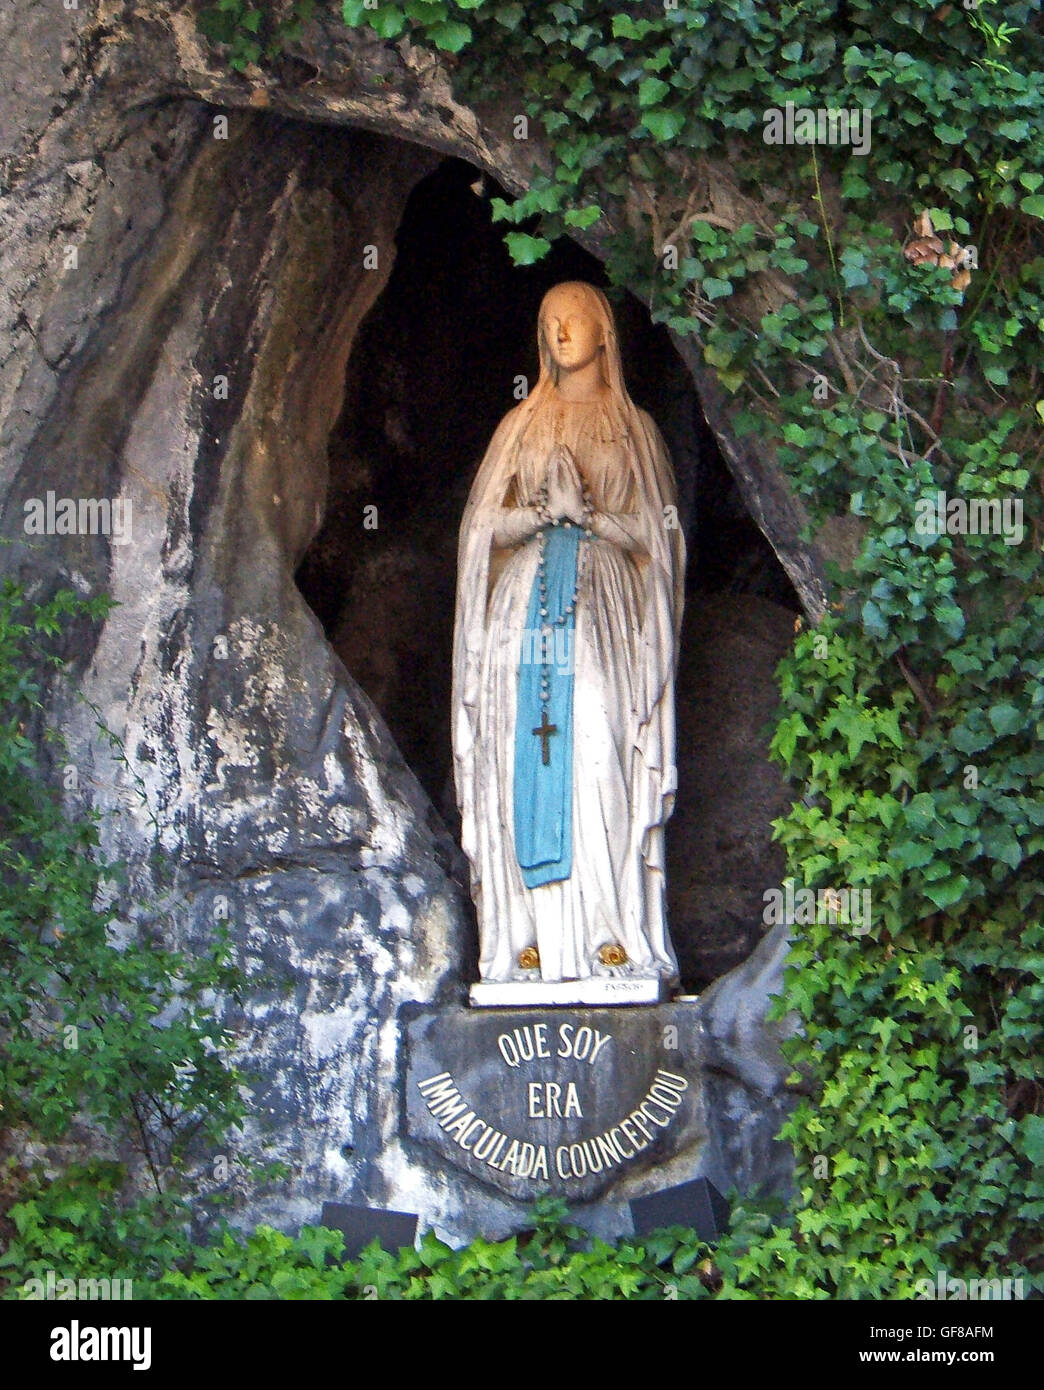 La estatua de la Virgen María en la Gruta sagrada en la ciudad francesa de Lourdes, situado en los Pirineos, ha sido un lugar sagrado desde 1858 Foto de stock